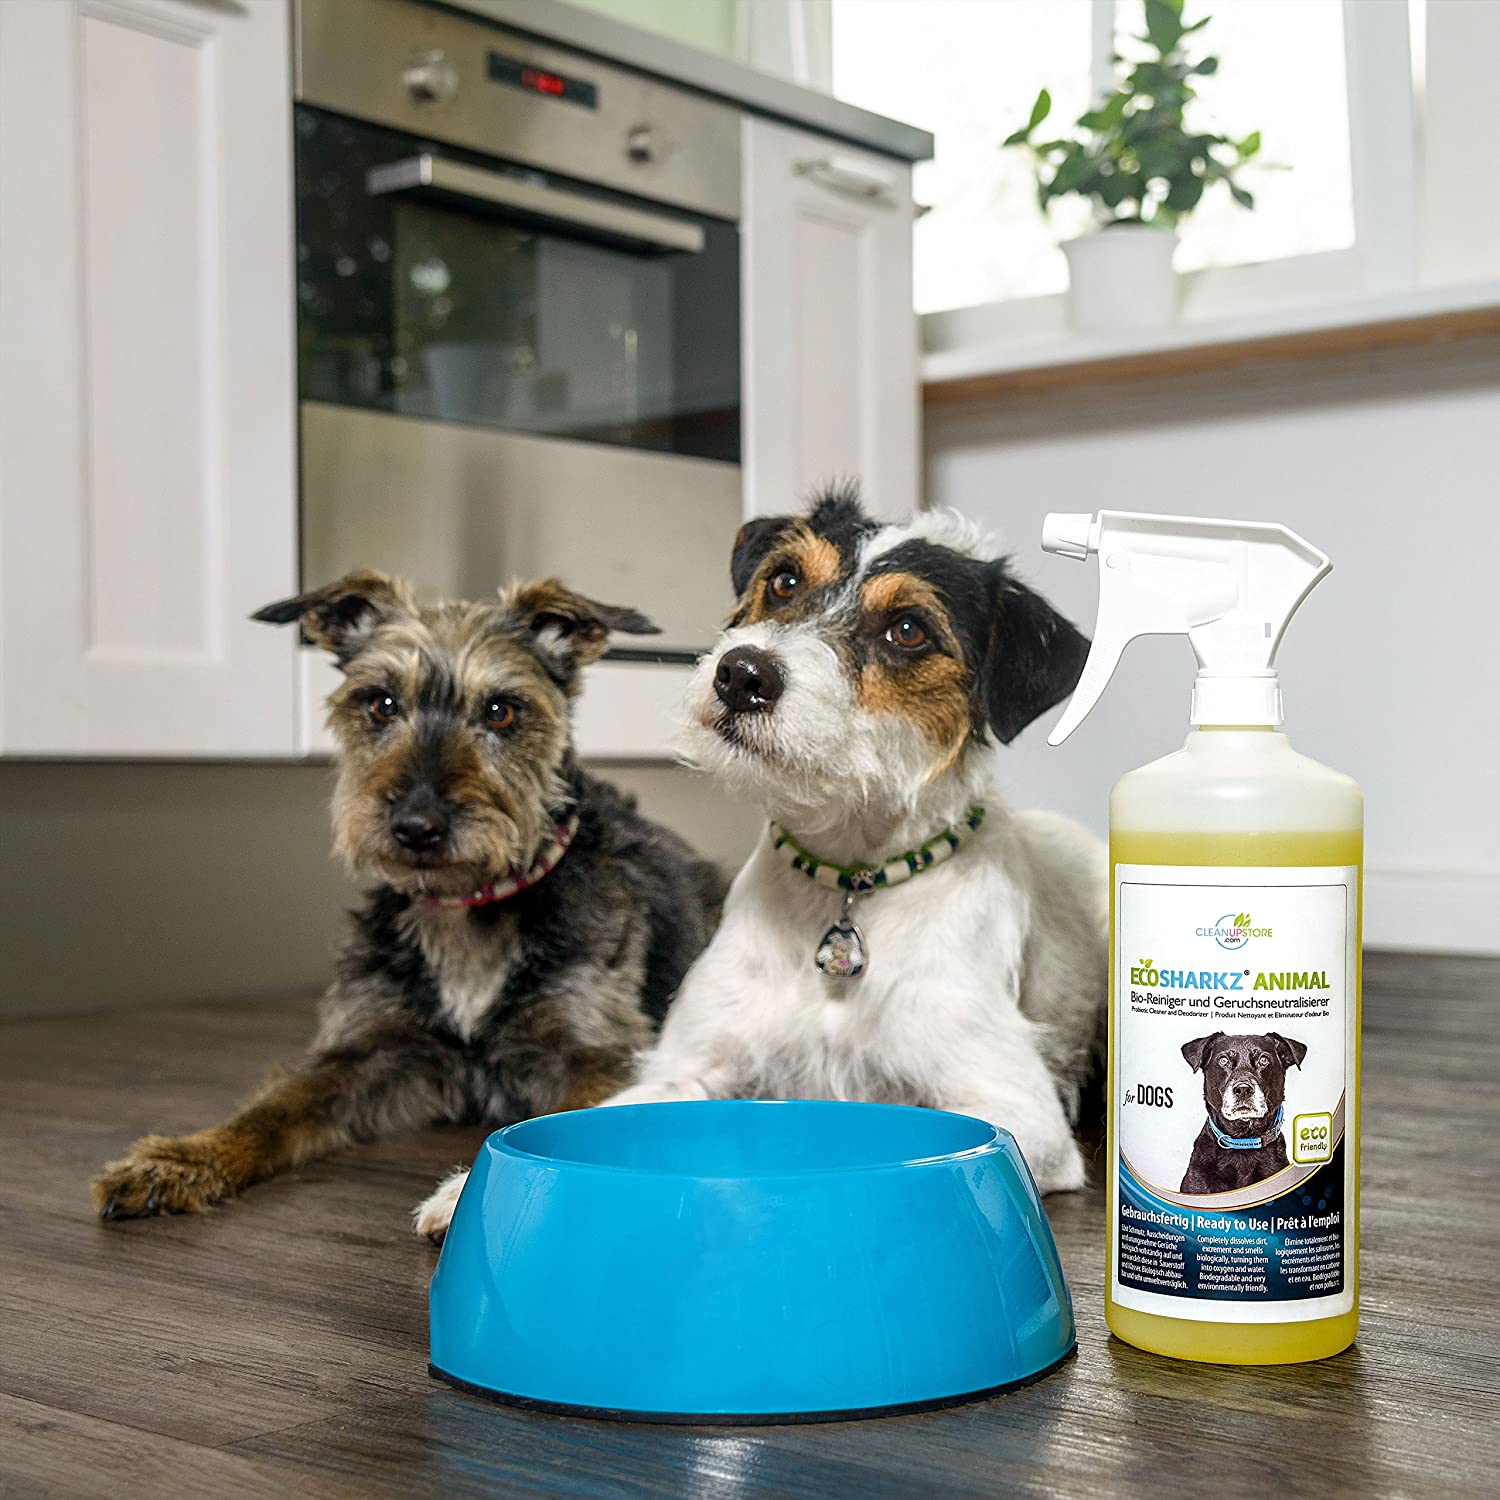  Ecosharkz neutralizador de olores en Spray para Perros - eliminador Natural de olores - Concentrado de Alto Rendimiento para Eliminar el Olor a orina (Rendimiento 25 litros listos para Usar) 